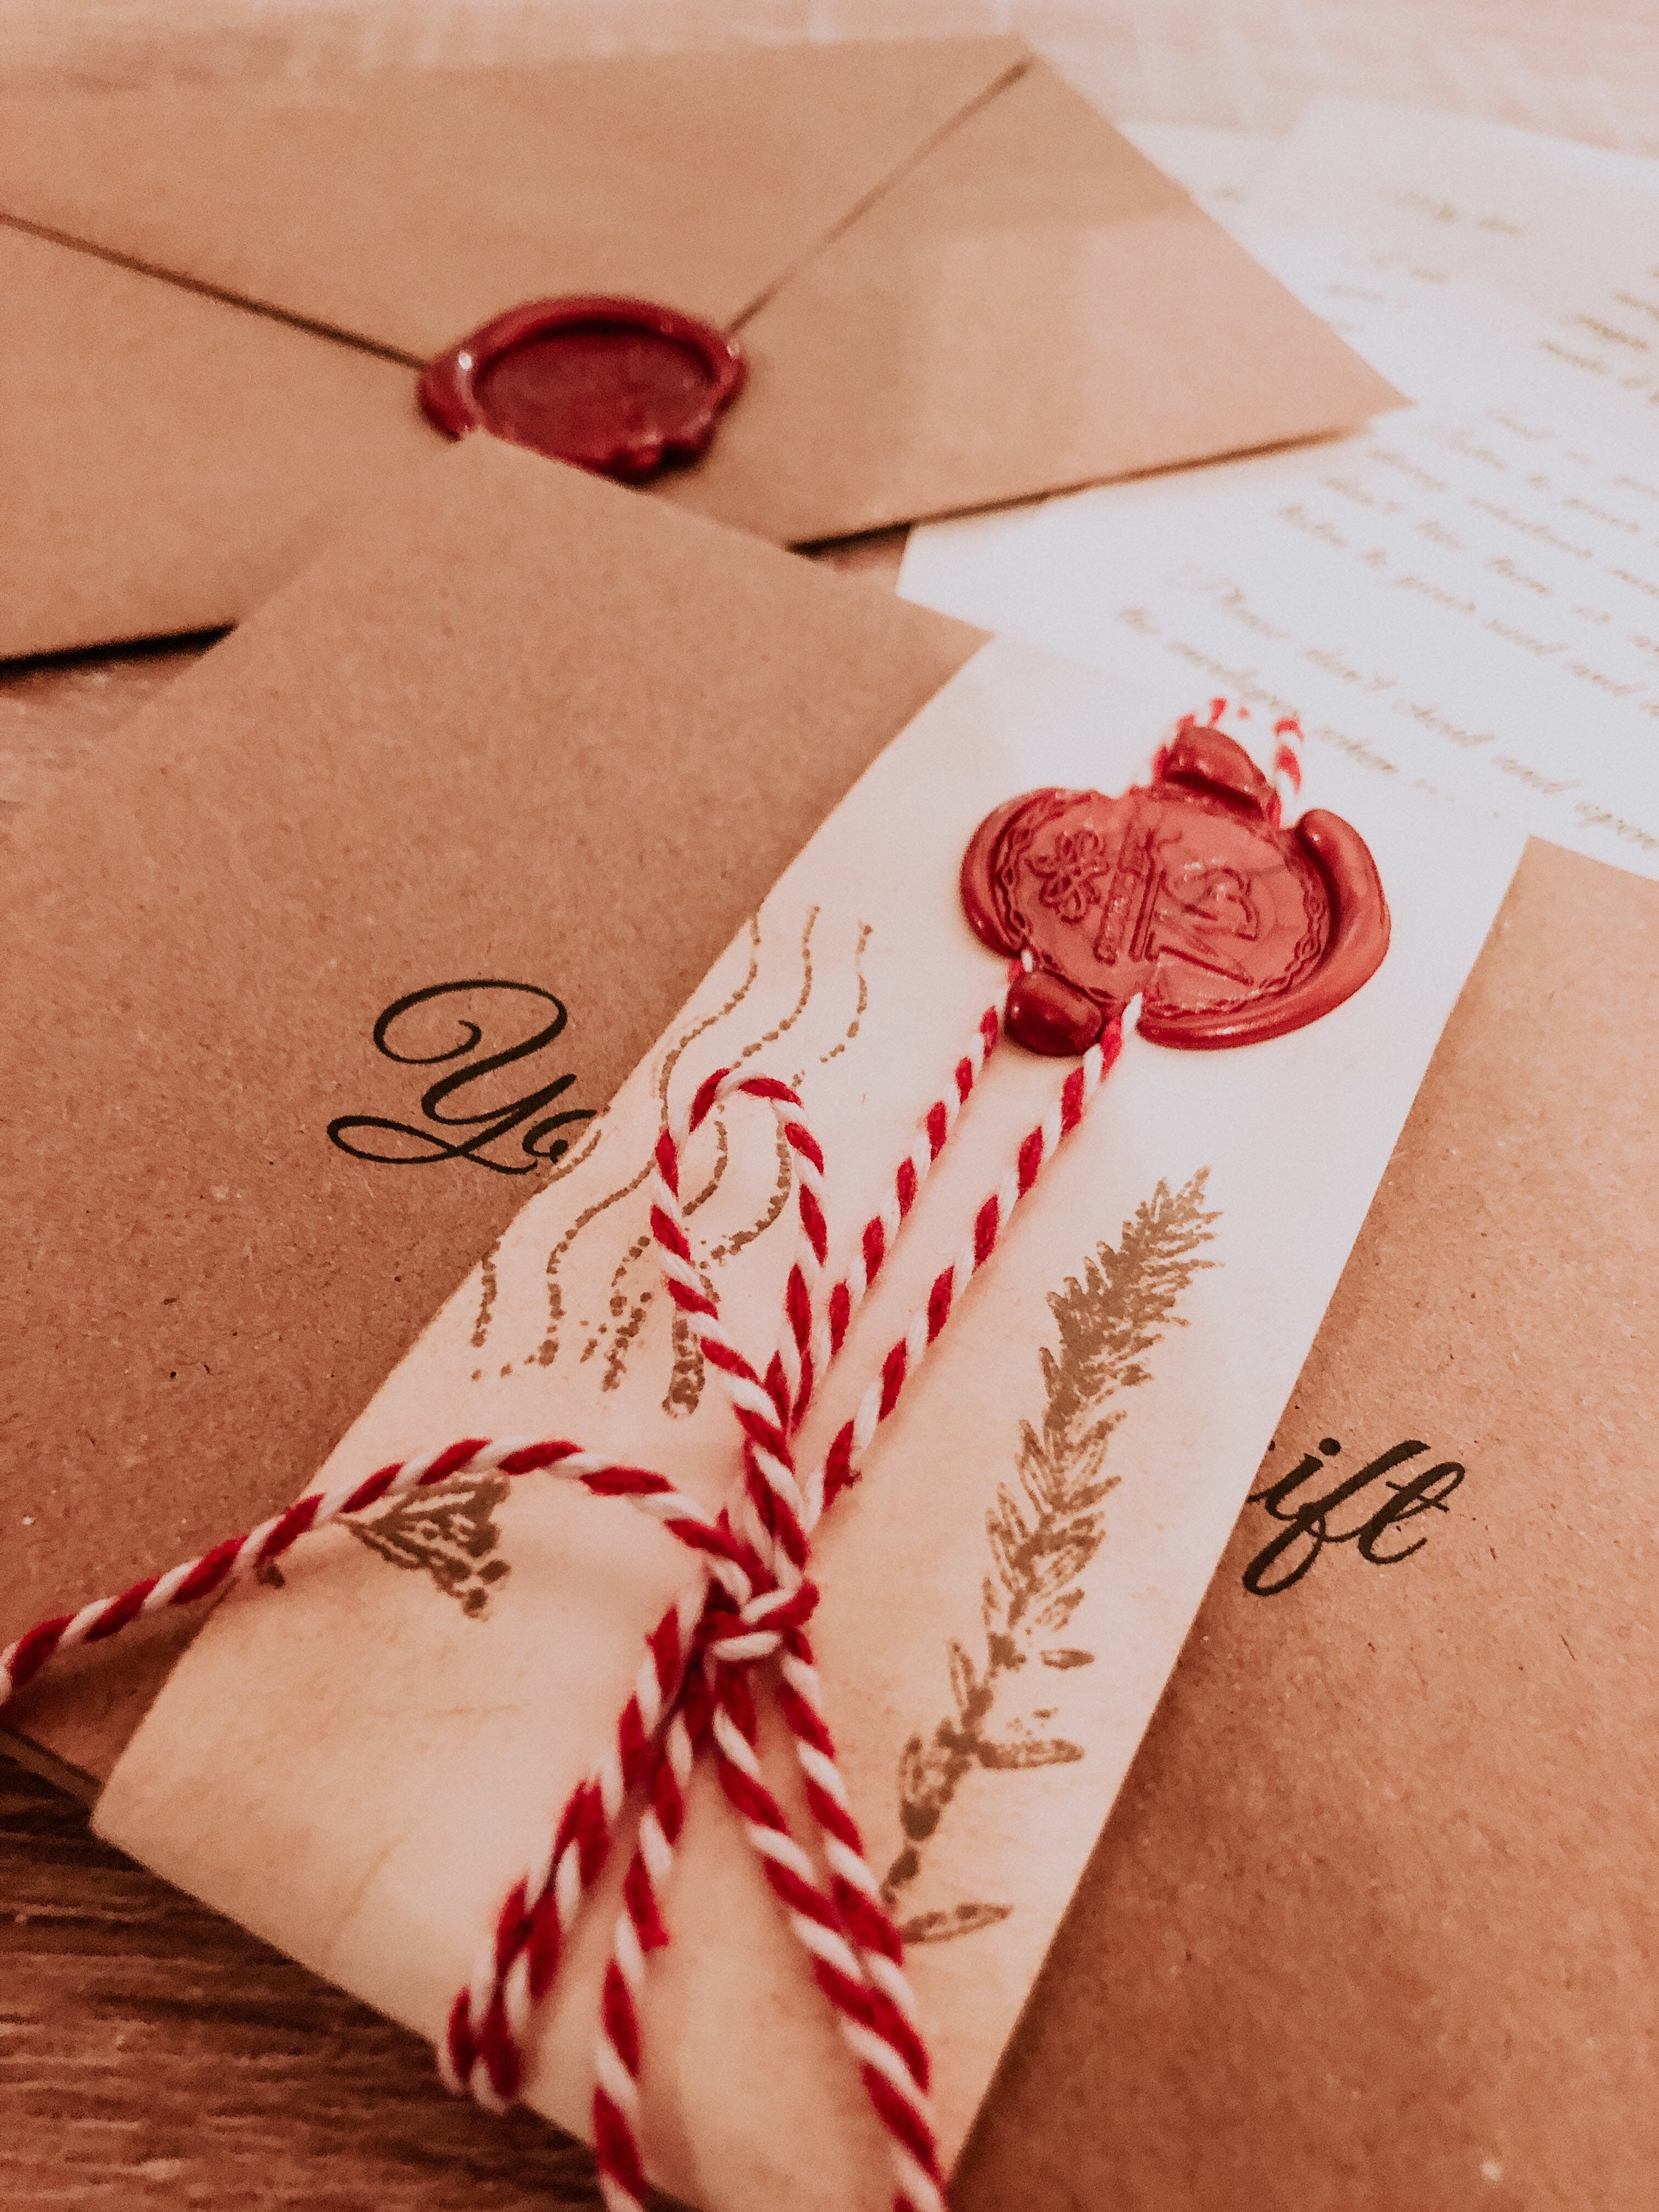 OIAGLH Valentine's Day Wax Seal Stamp Set,Vintage Wax Envelope